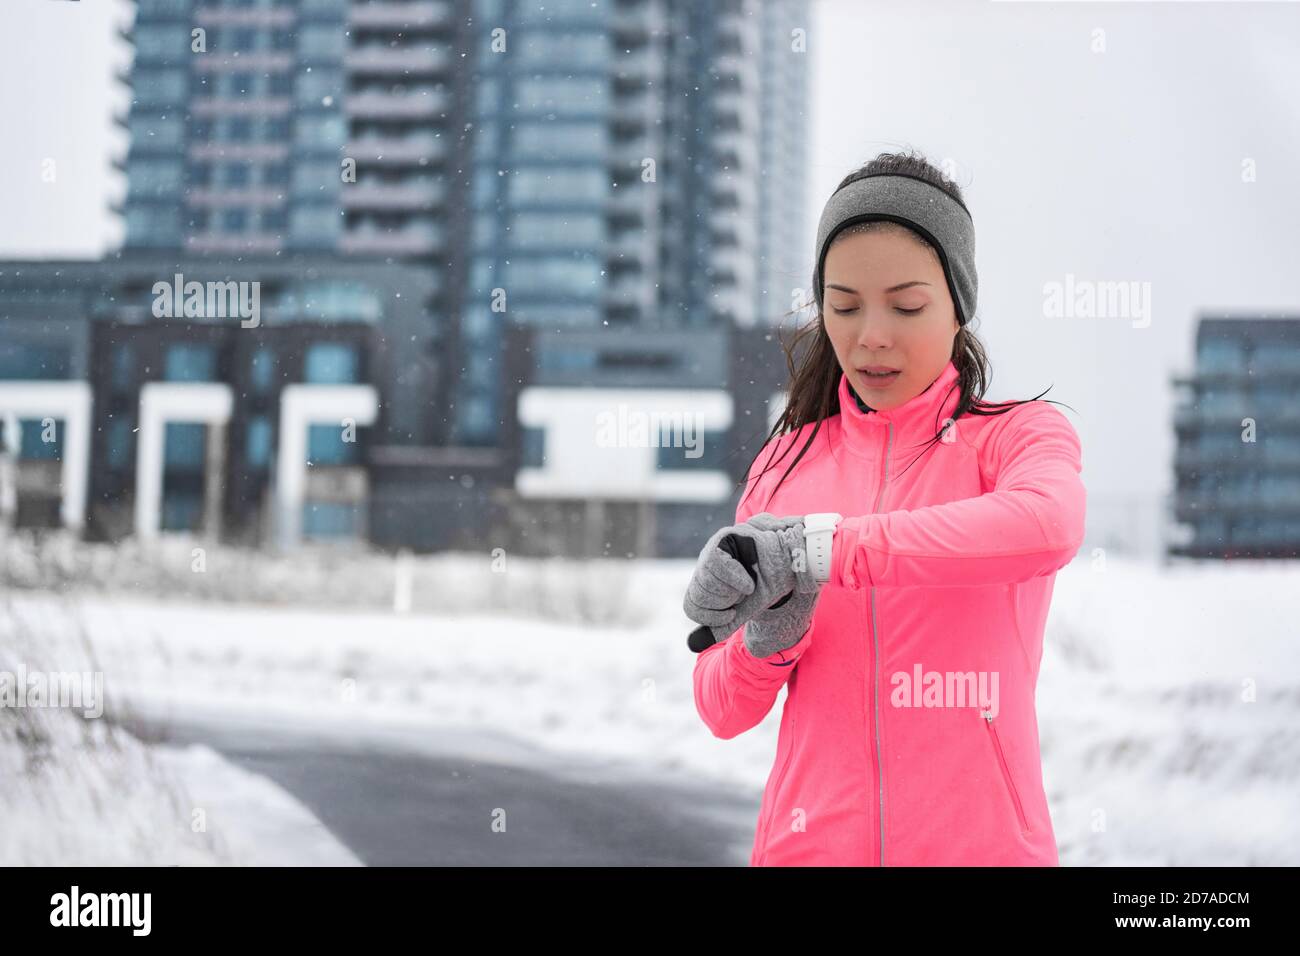 Invierno correr smartwatch fitness chica en la nieve fría tiempo correr  fuera en la calle con reloj inteligente y ropa a prueba de viento con  guantes, cinta para la cabeza Fotografía de